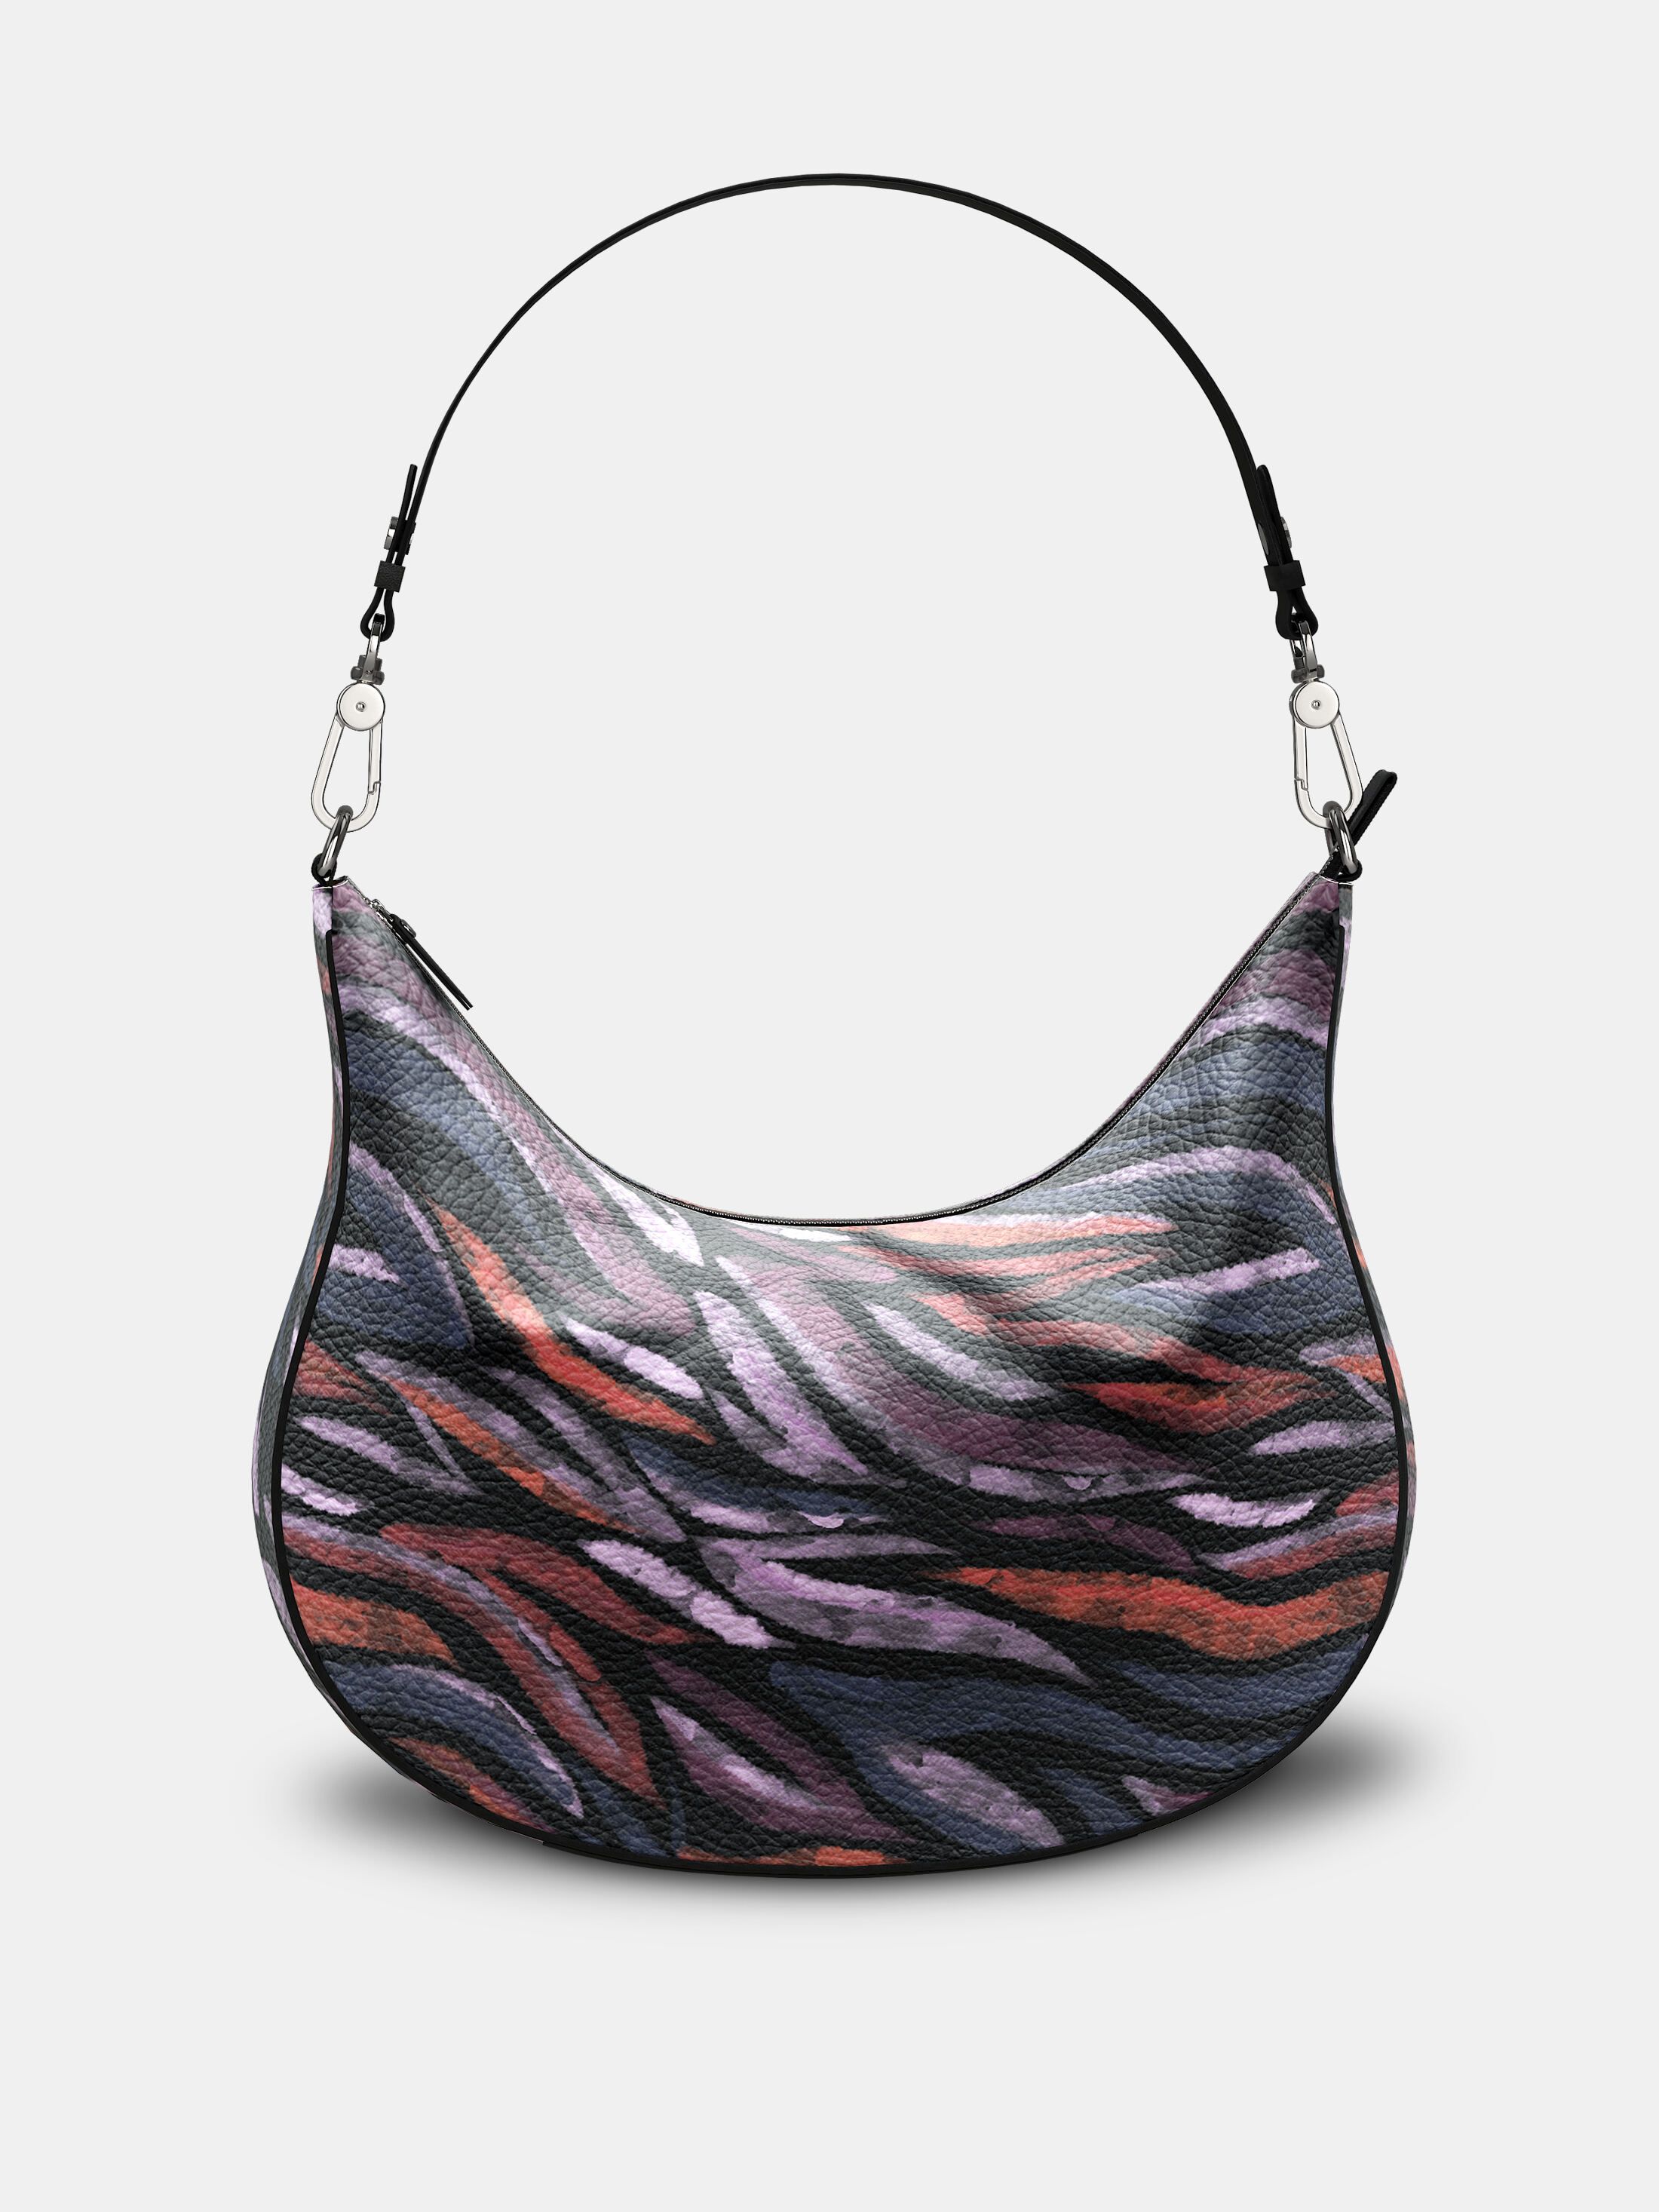 design your own shoulder bag nz